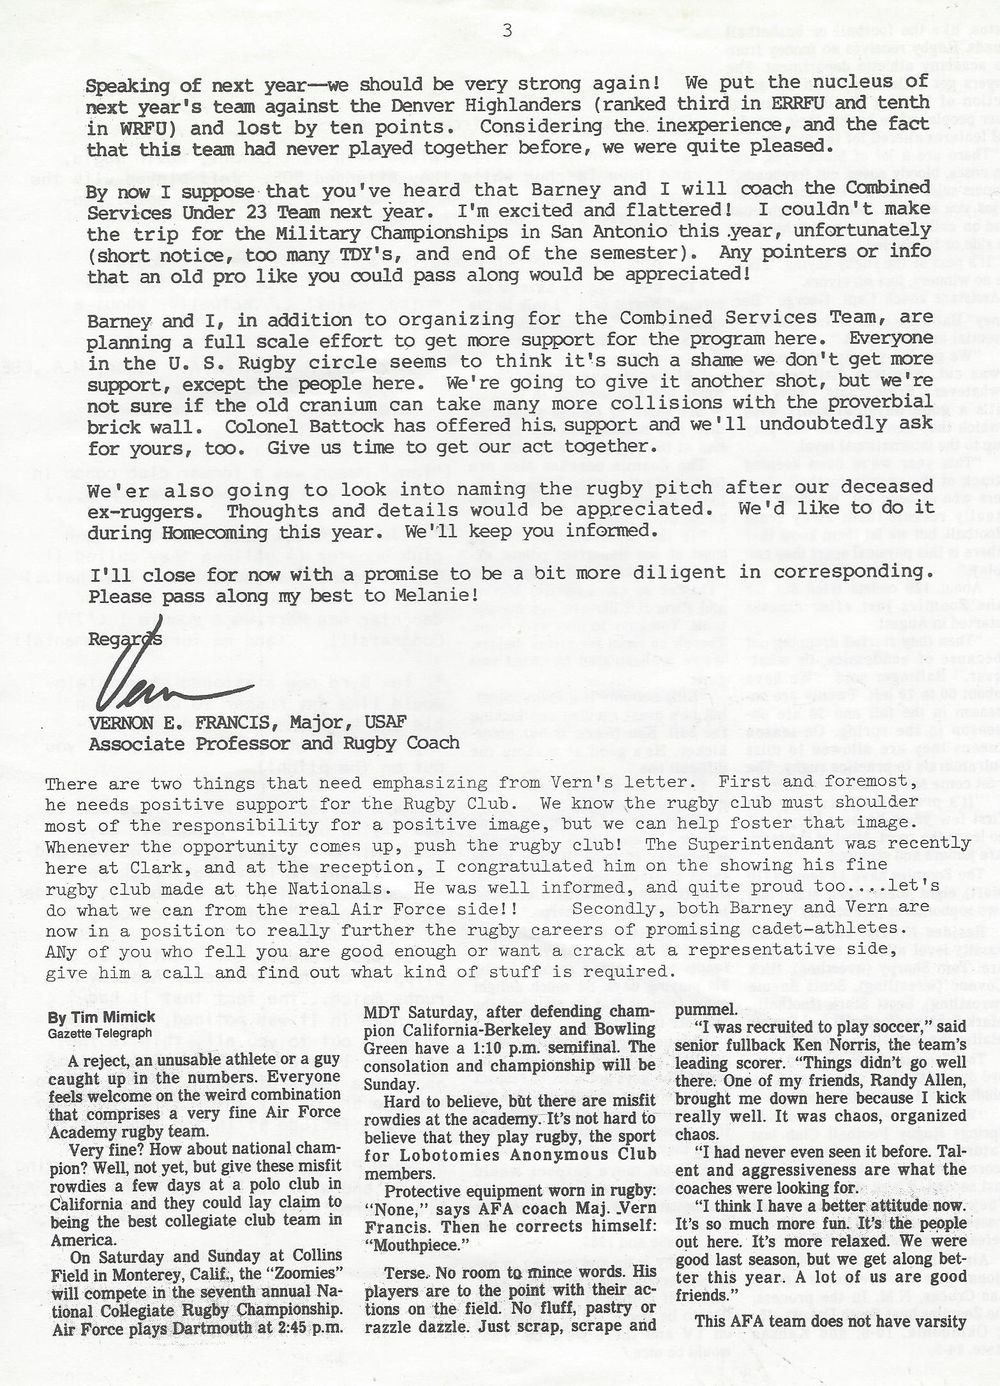 1986 08 Newsletter 3.jpg